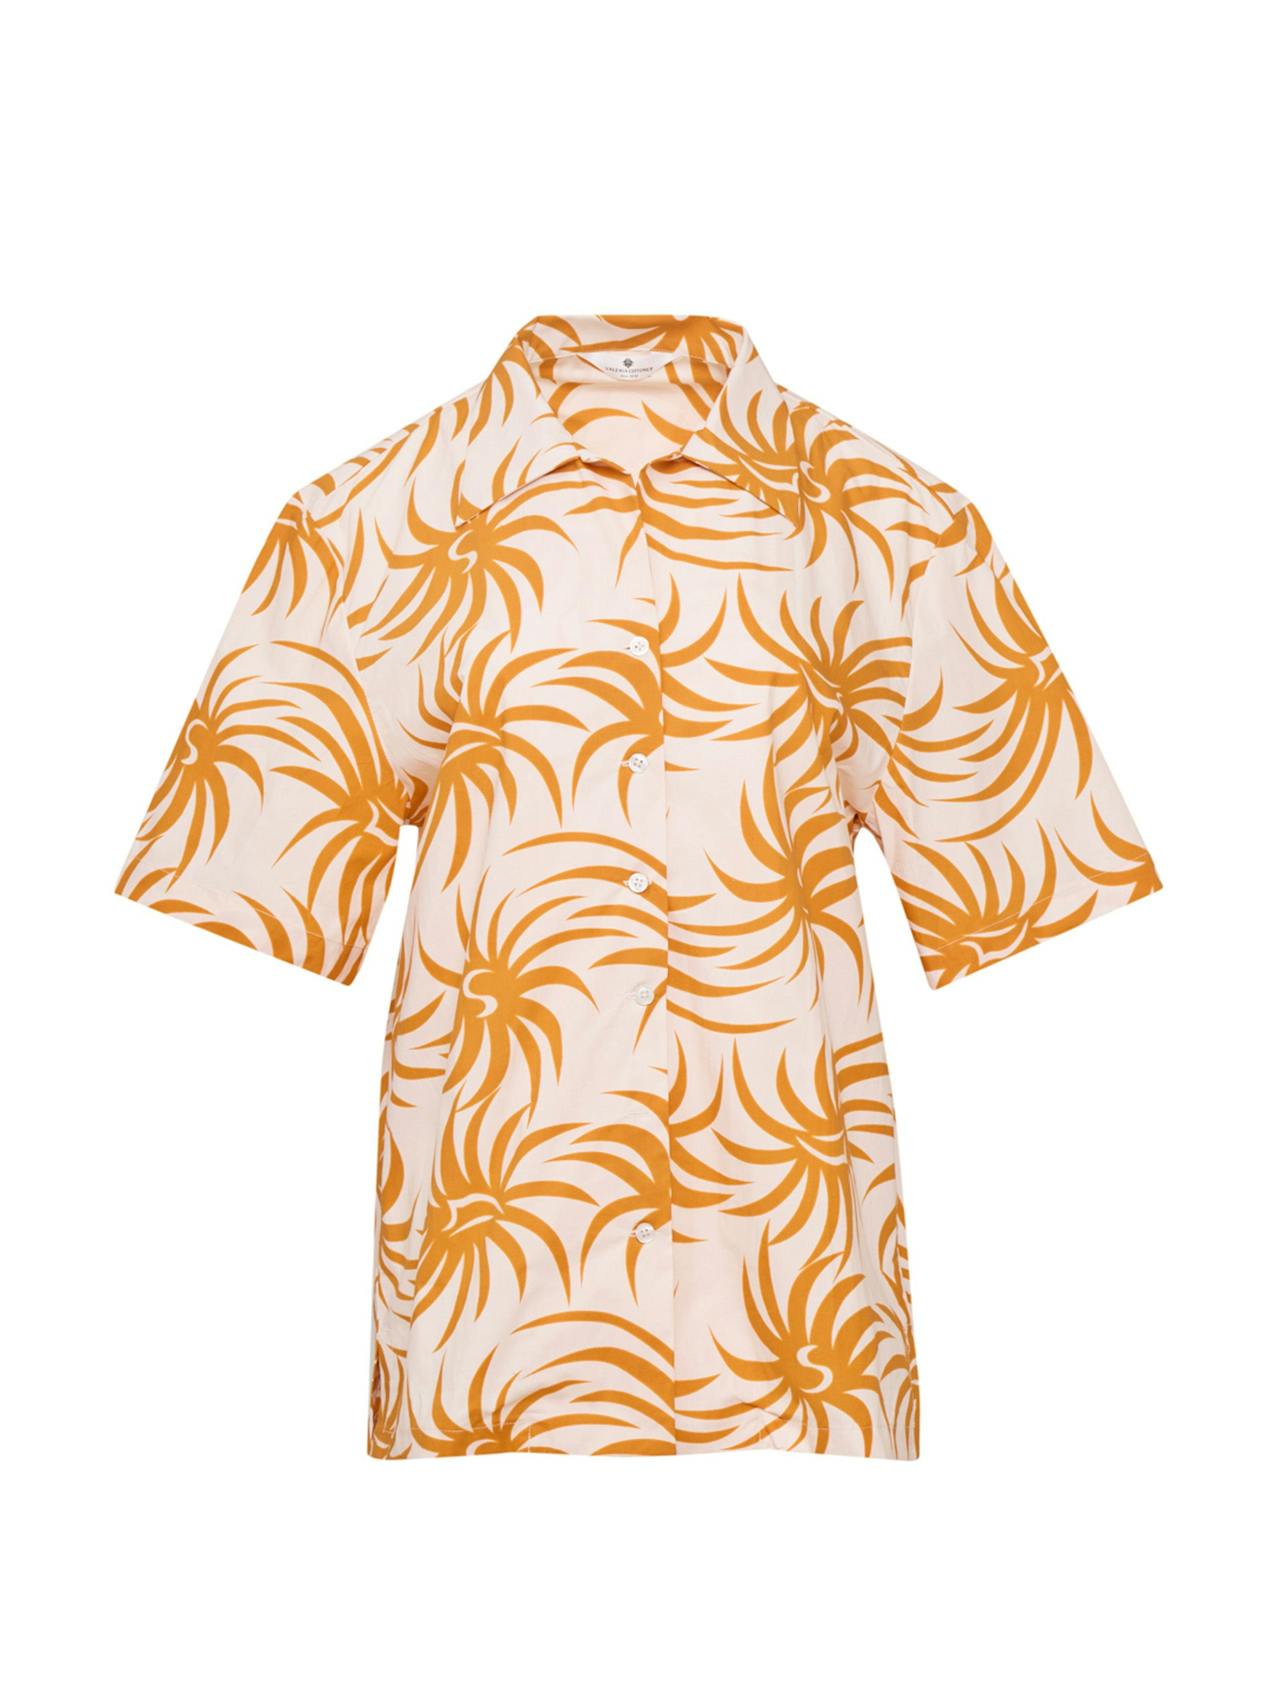 Orange spiral cotton poplin shirt